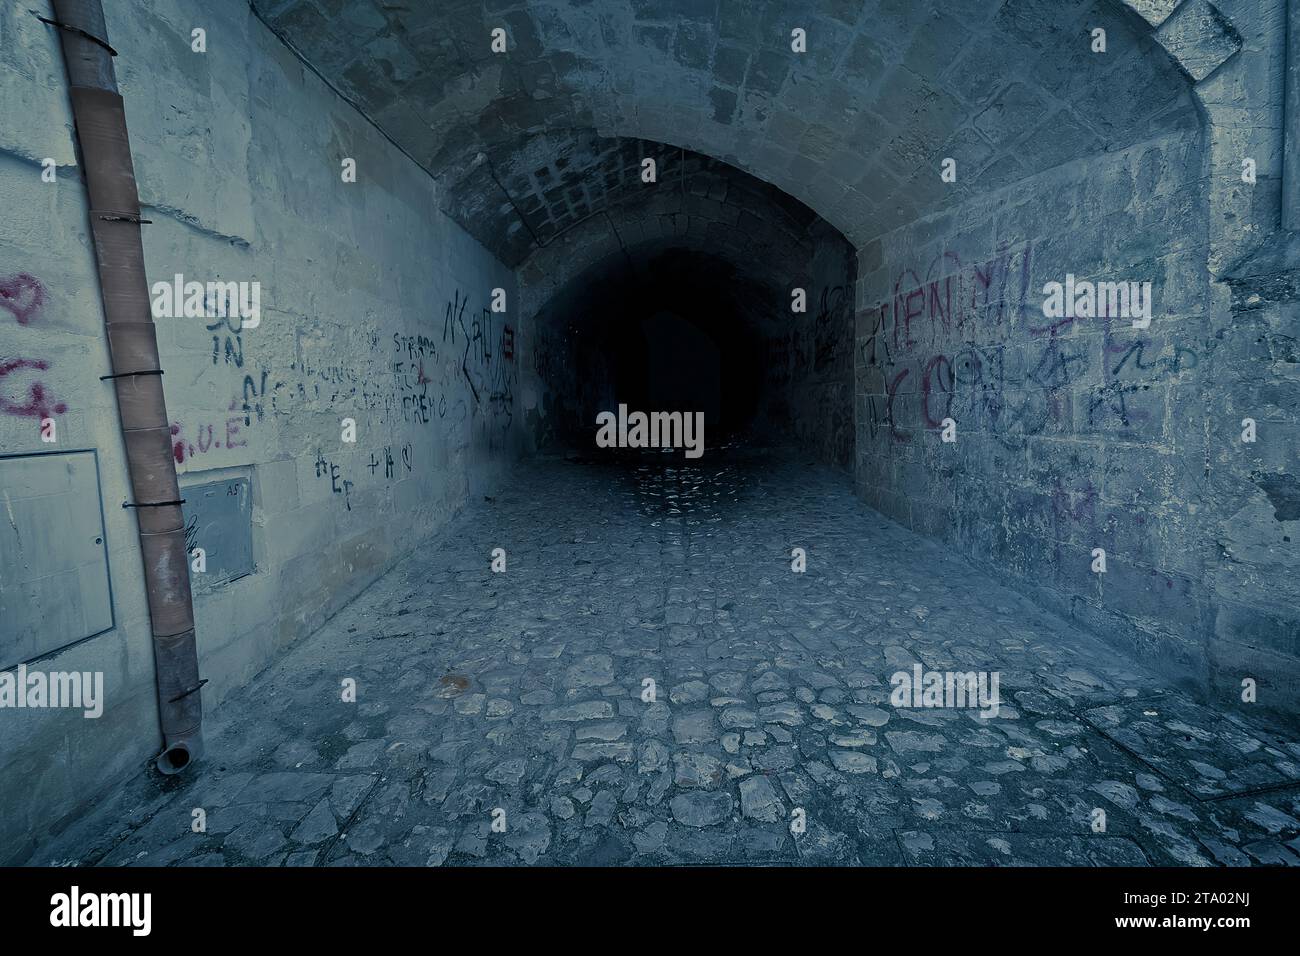 tunnel sombre effrayant abandonné et claustrophobe, avec écriture sur le mur de briques, concept de désolation Banque D'Images